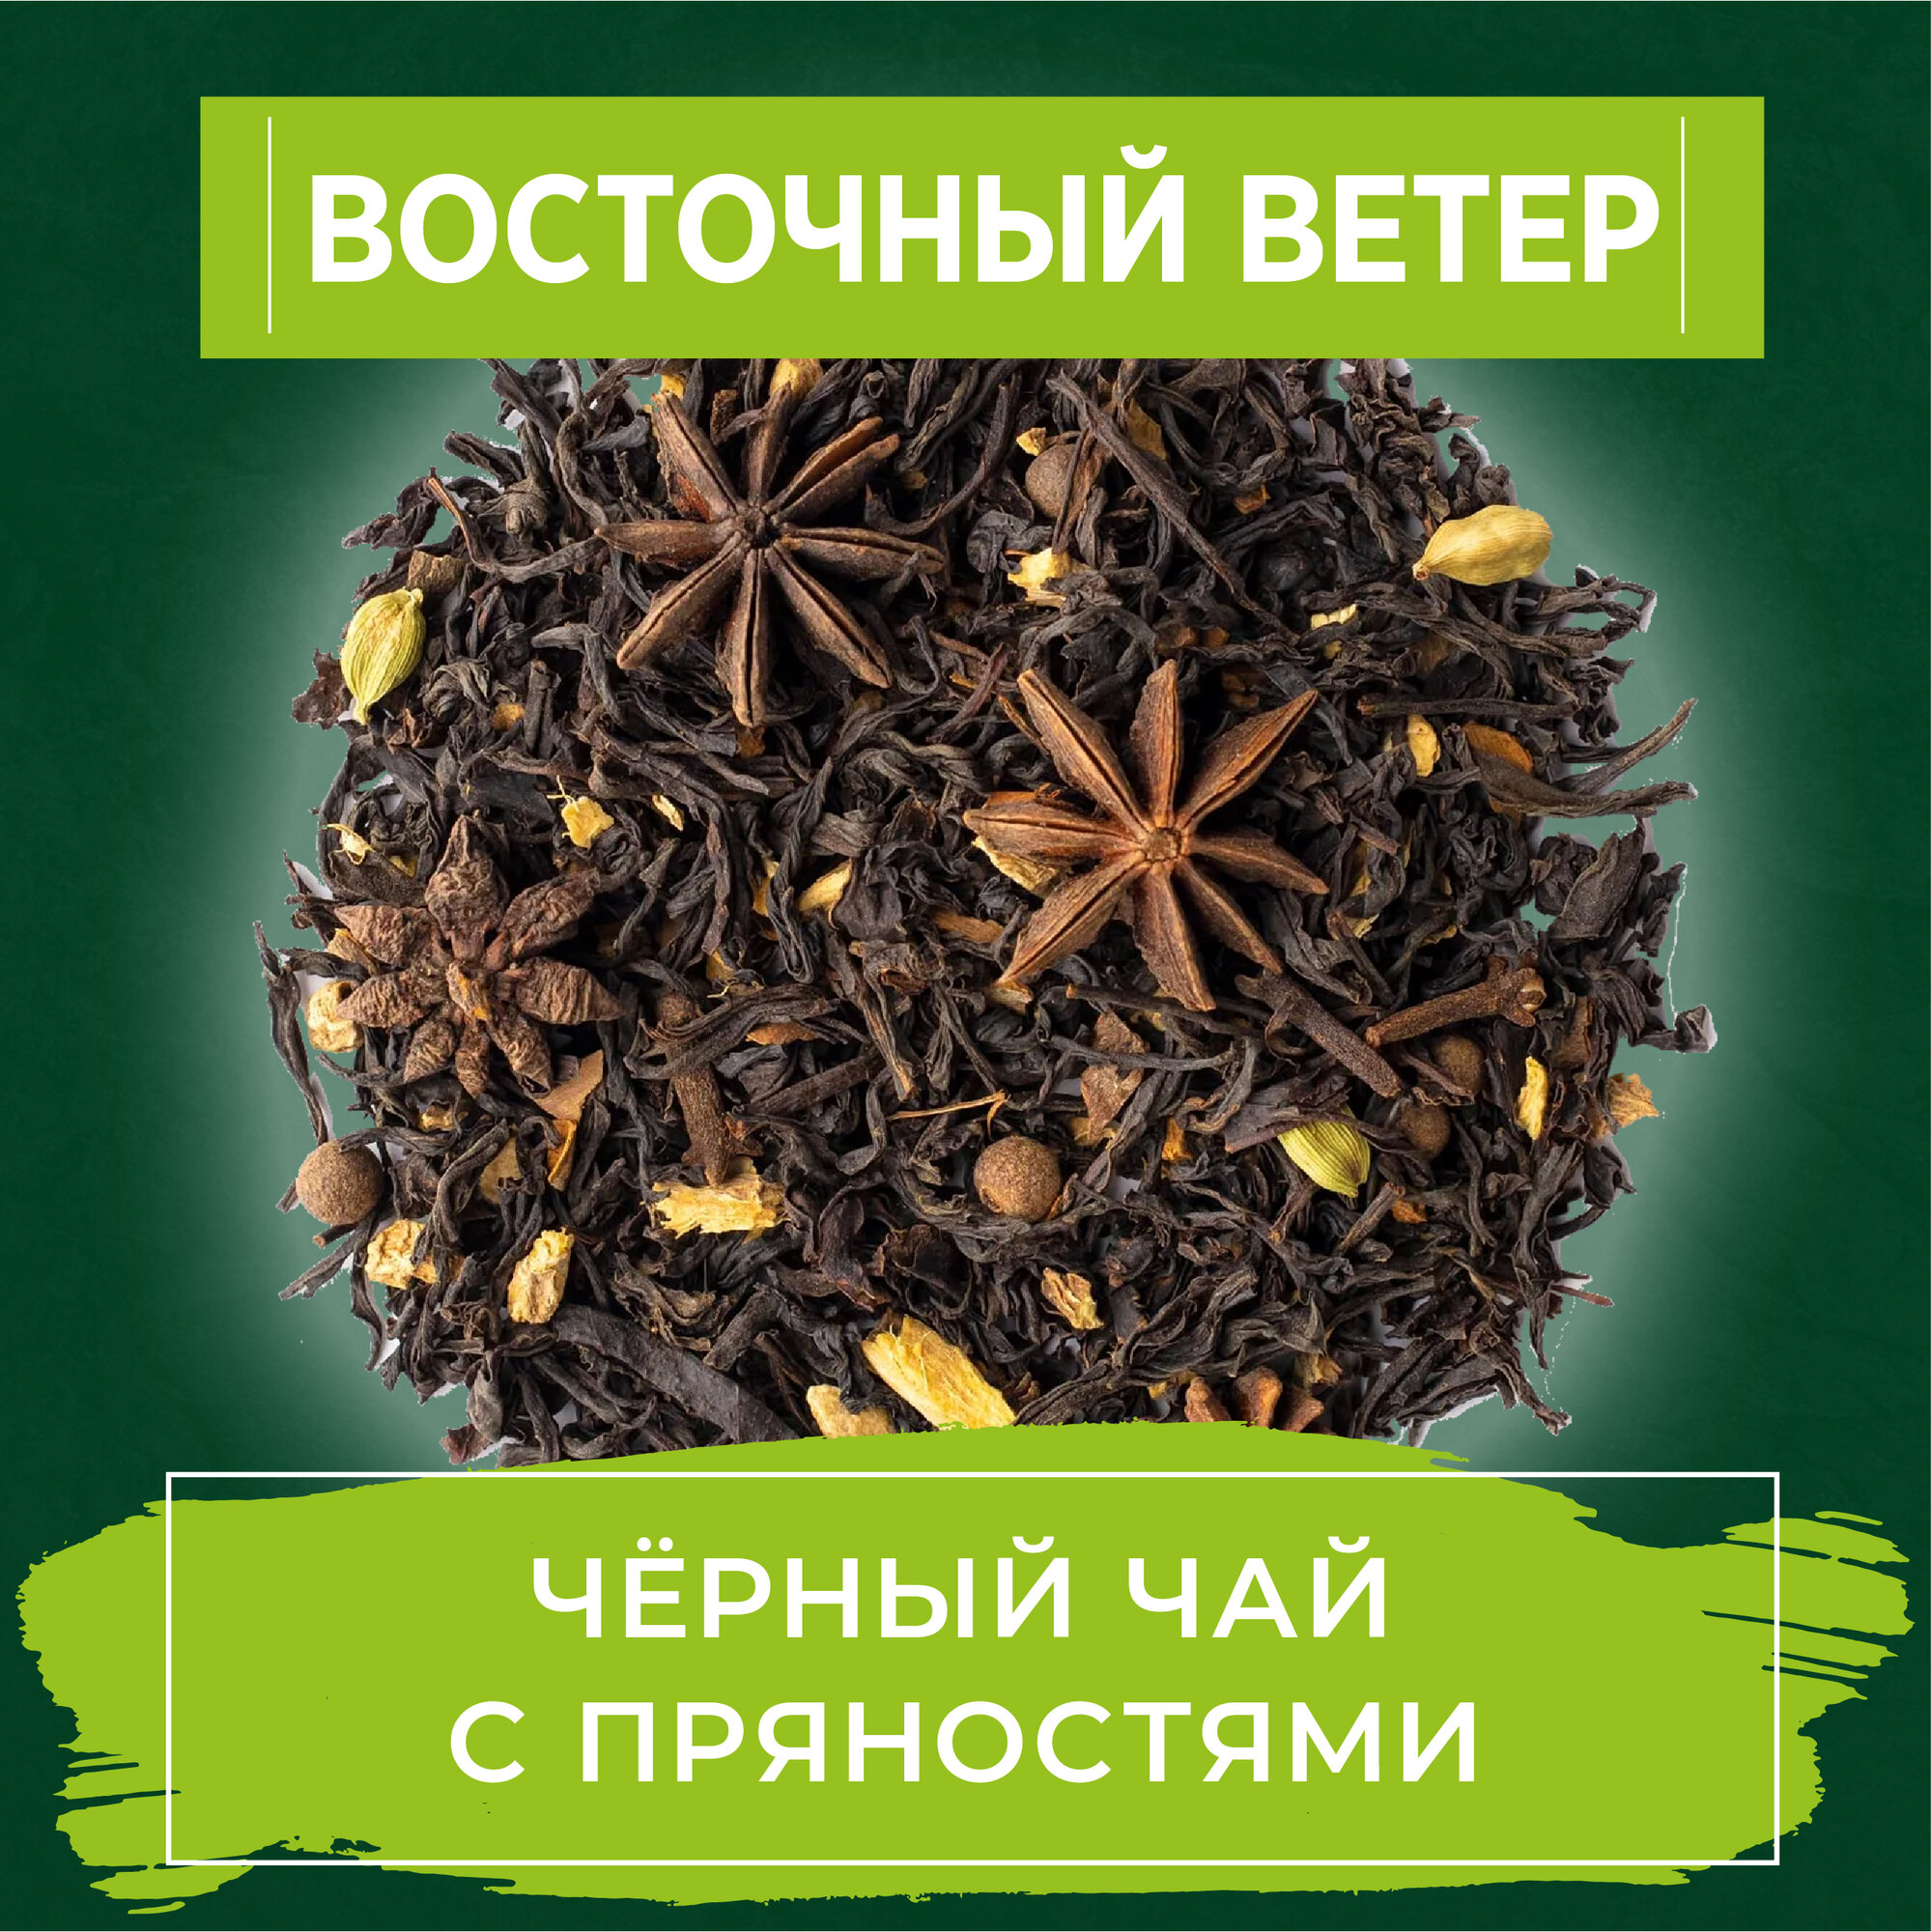 Чай Масала листовой уютный ЧАЙ "Восточный ветер", 100 грамм